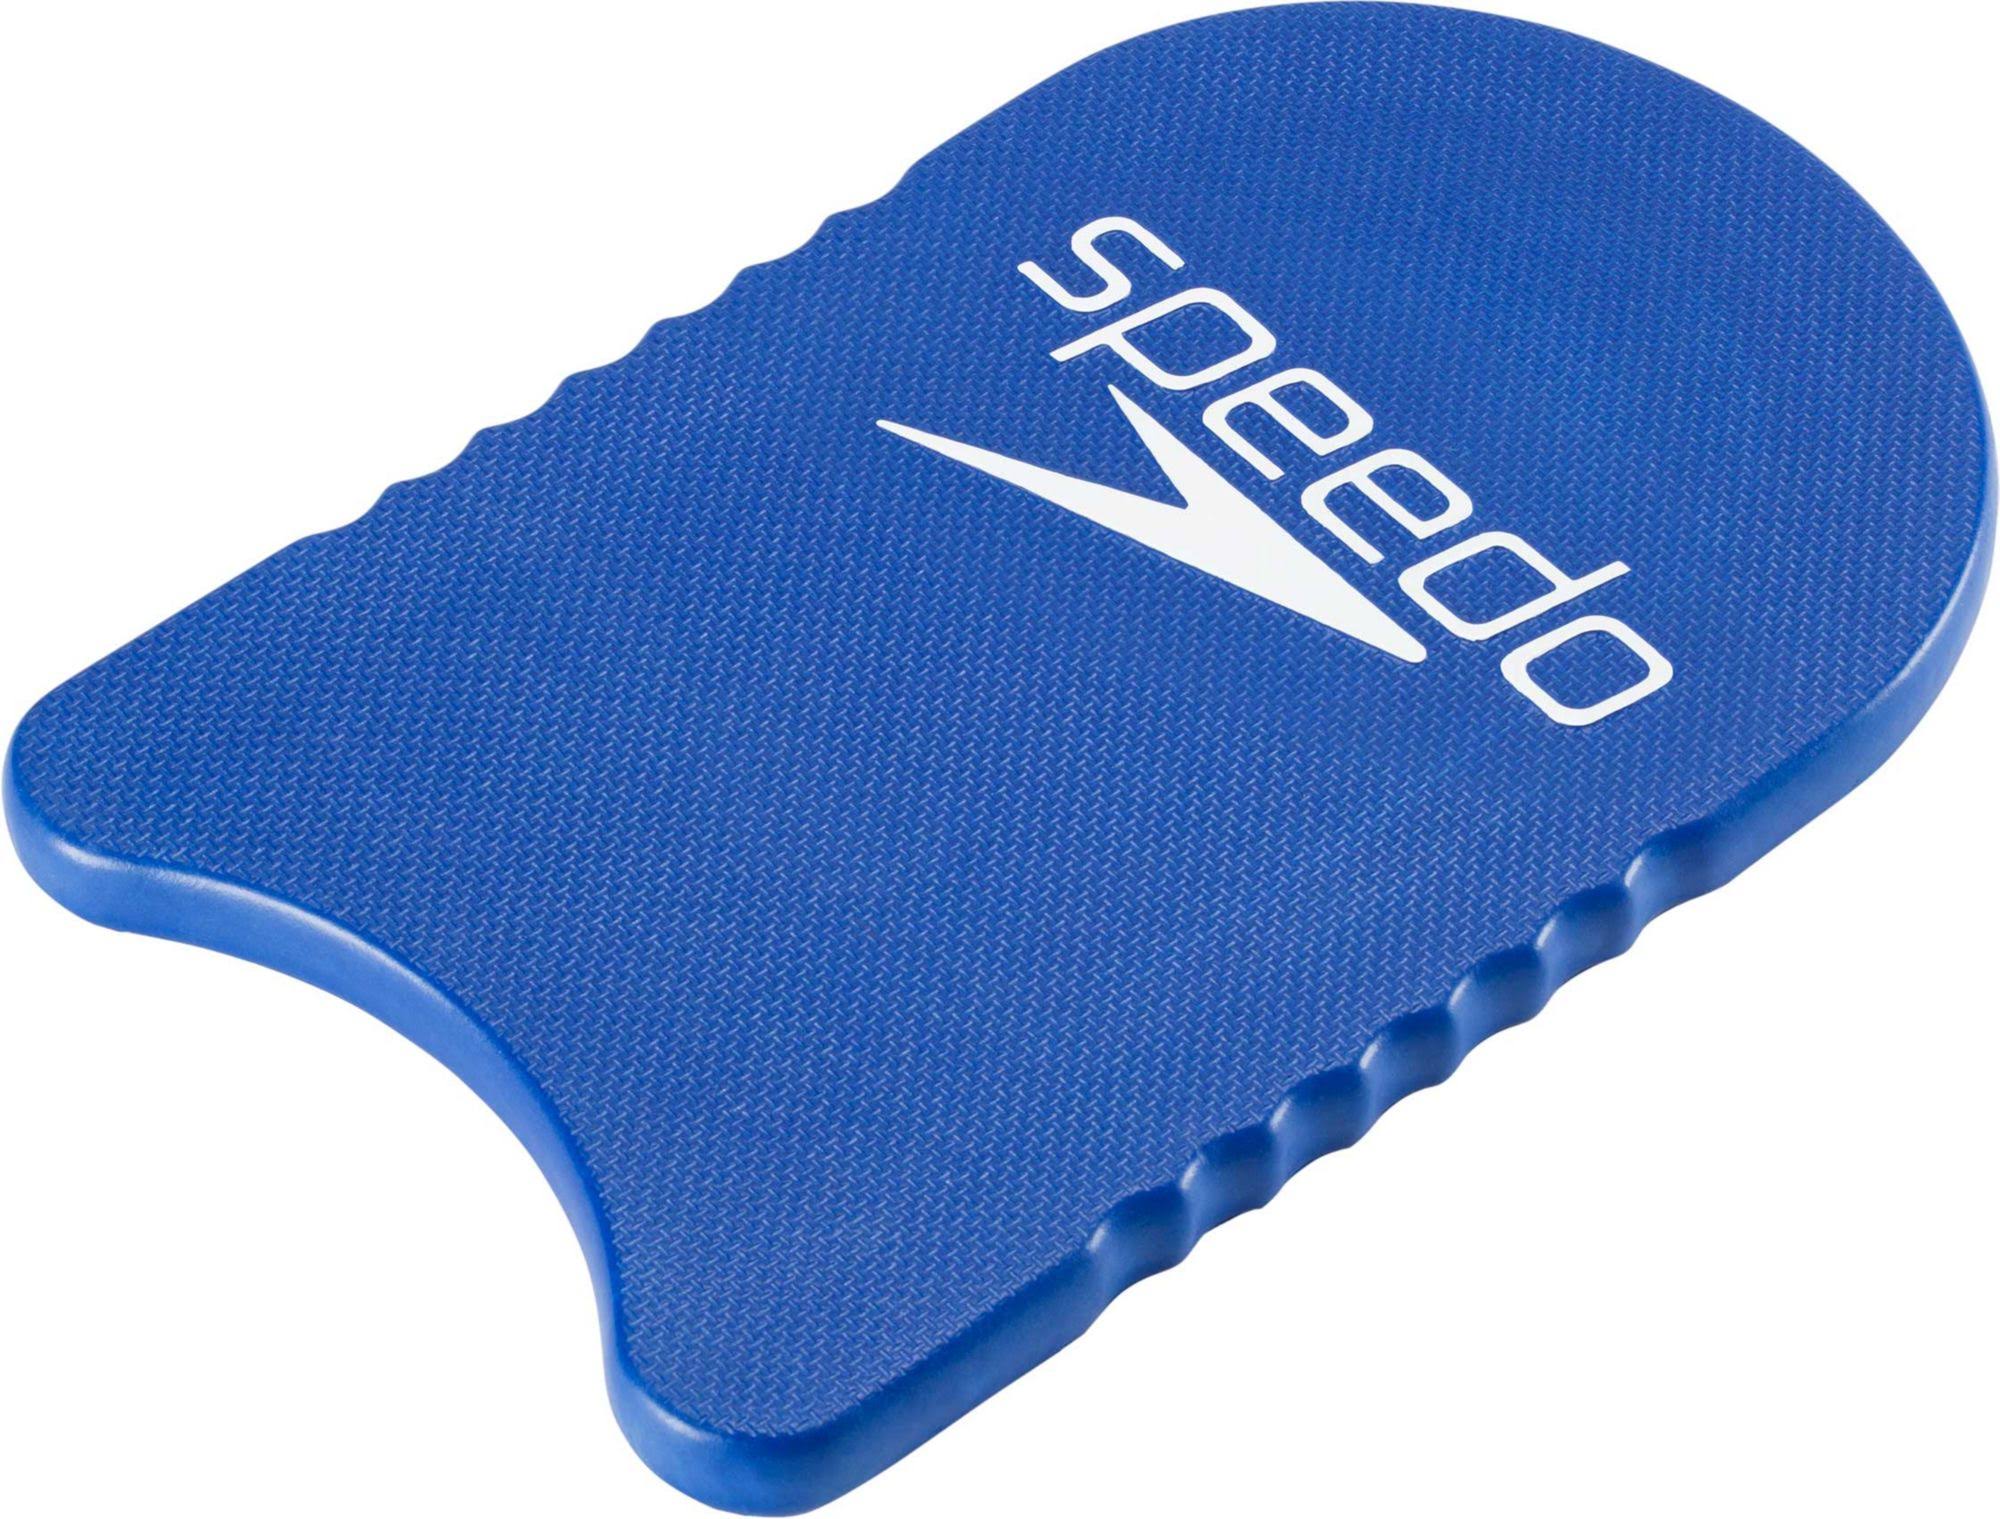 Speedo Jr Team Kickboard - Blue, One Size